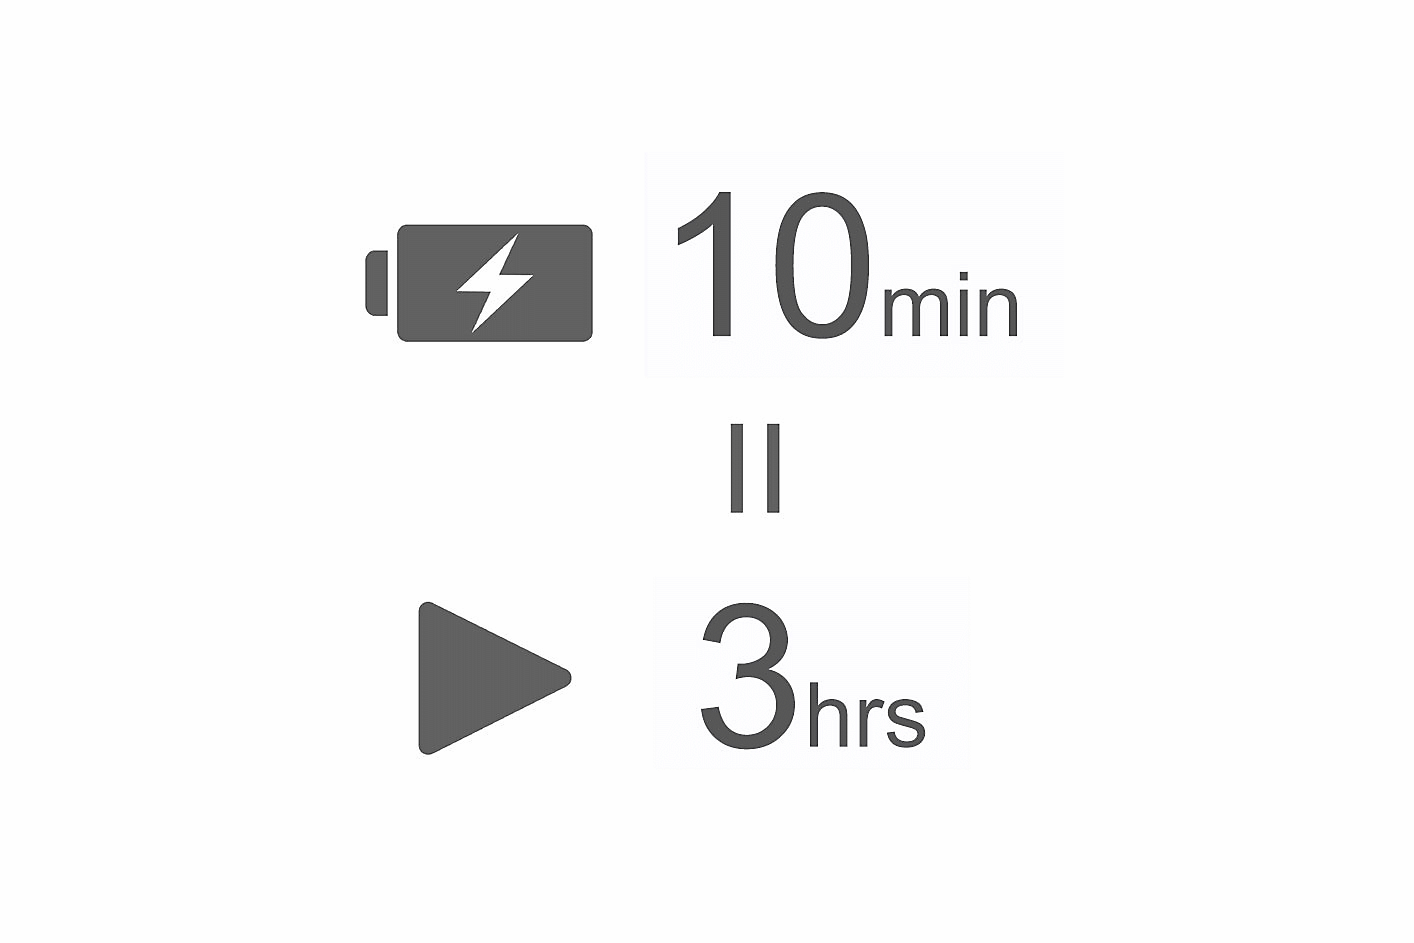 Ikona akumulatora z symbolem błyskawicy oraz napis 10 min nad znakiem równości i ikoną odtwarzania z napisem 3 h